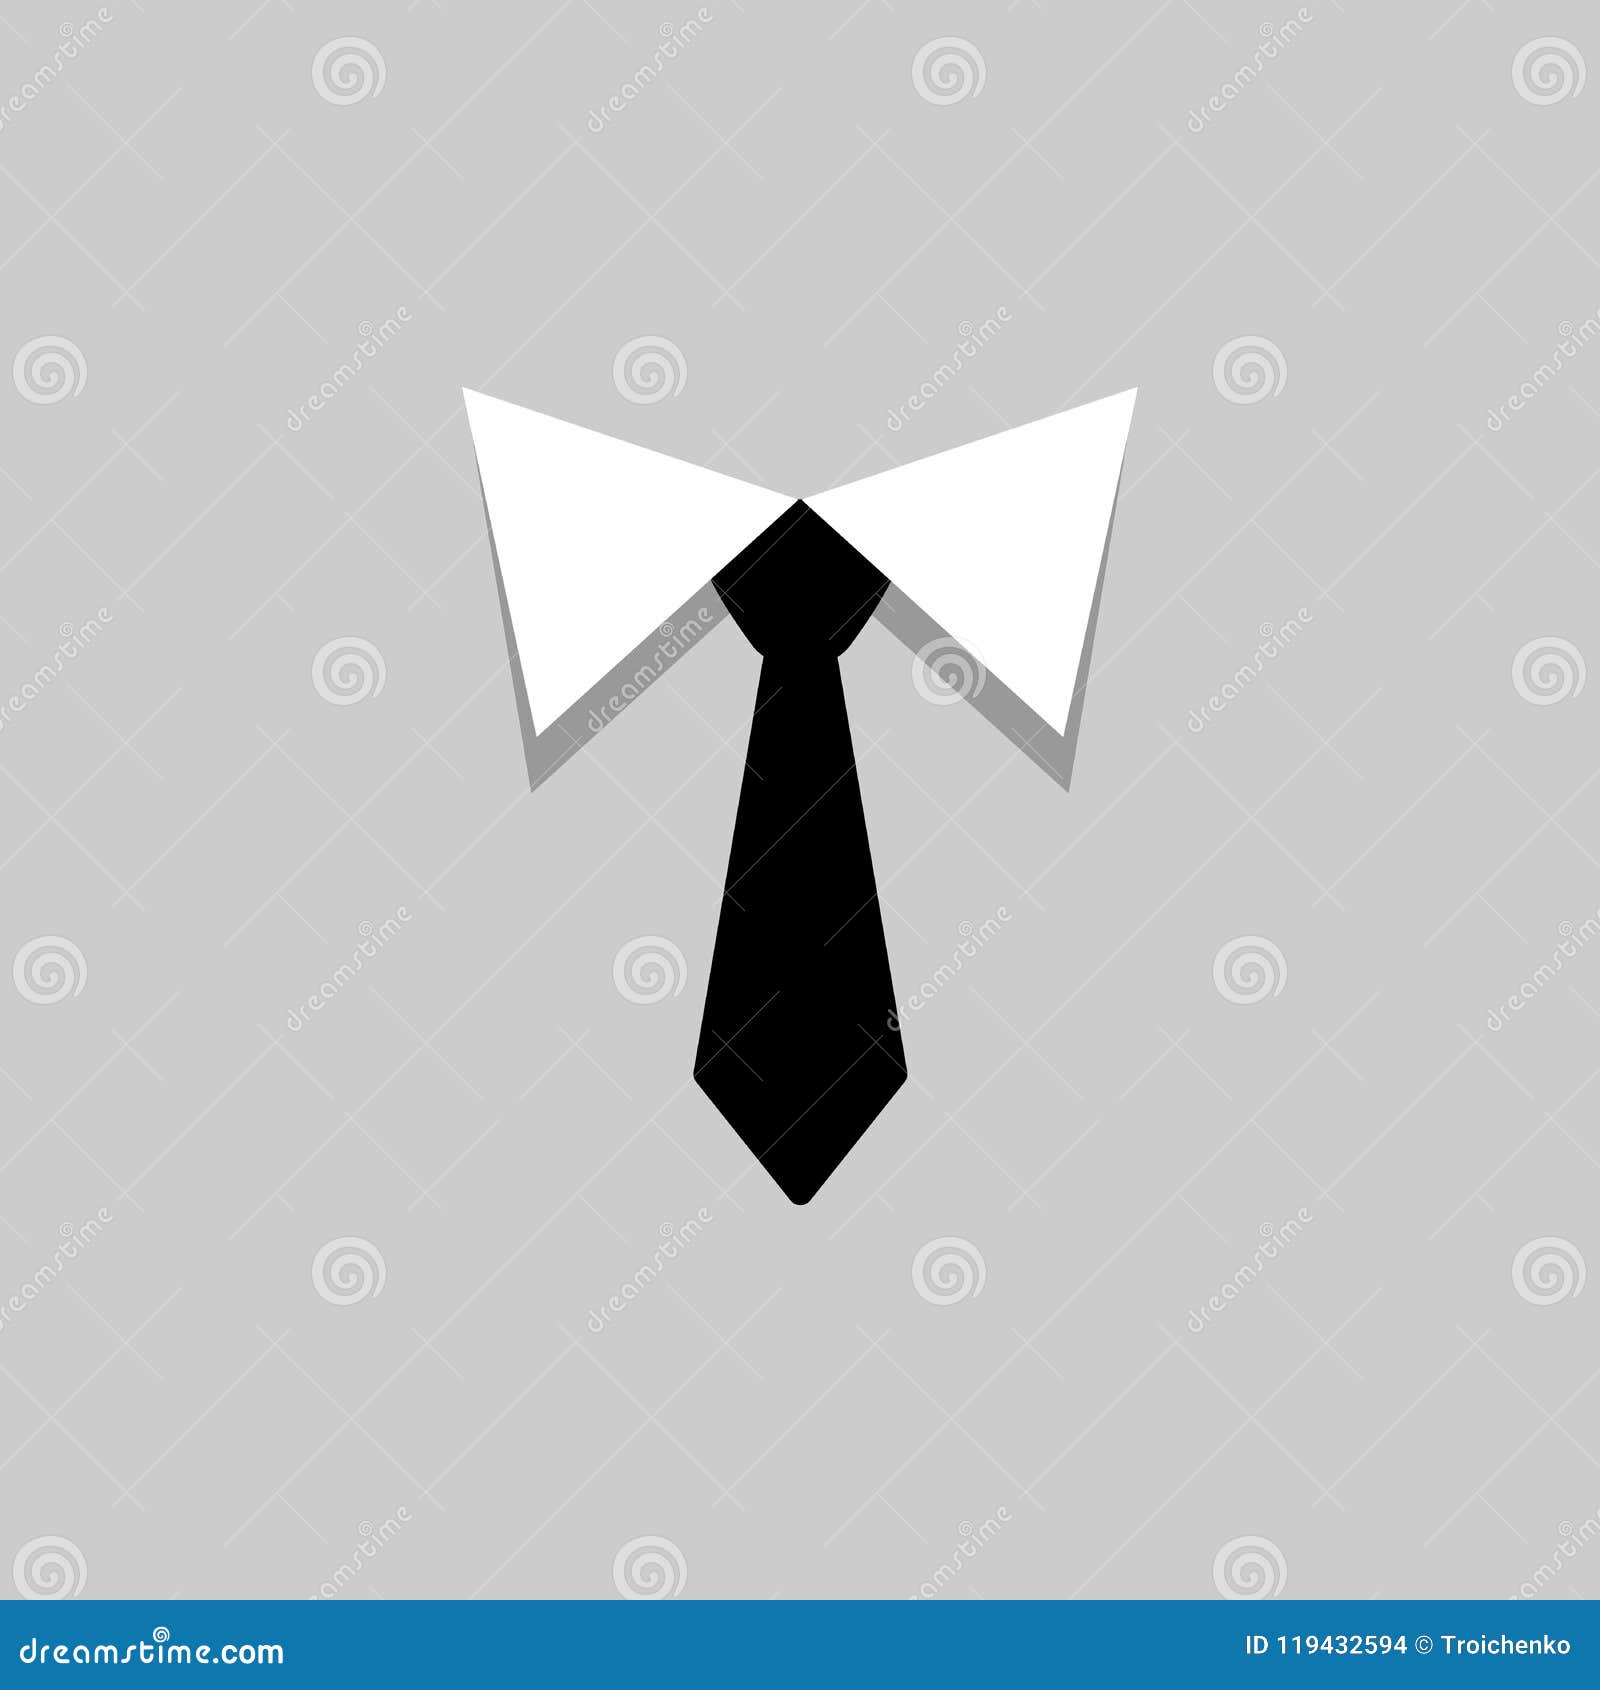 Белый галстук у черного кота 7 букв. Галстук минималистичный. Галстук с логотипом. Галстук мультяшный. Галстук на черном фоне.